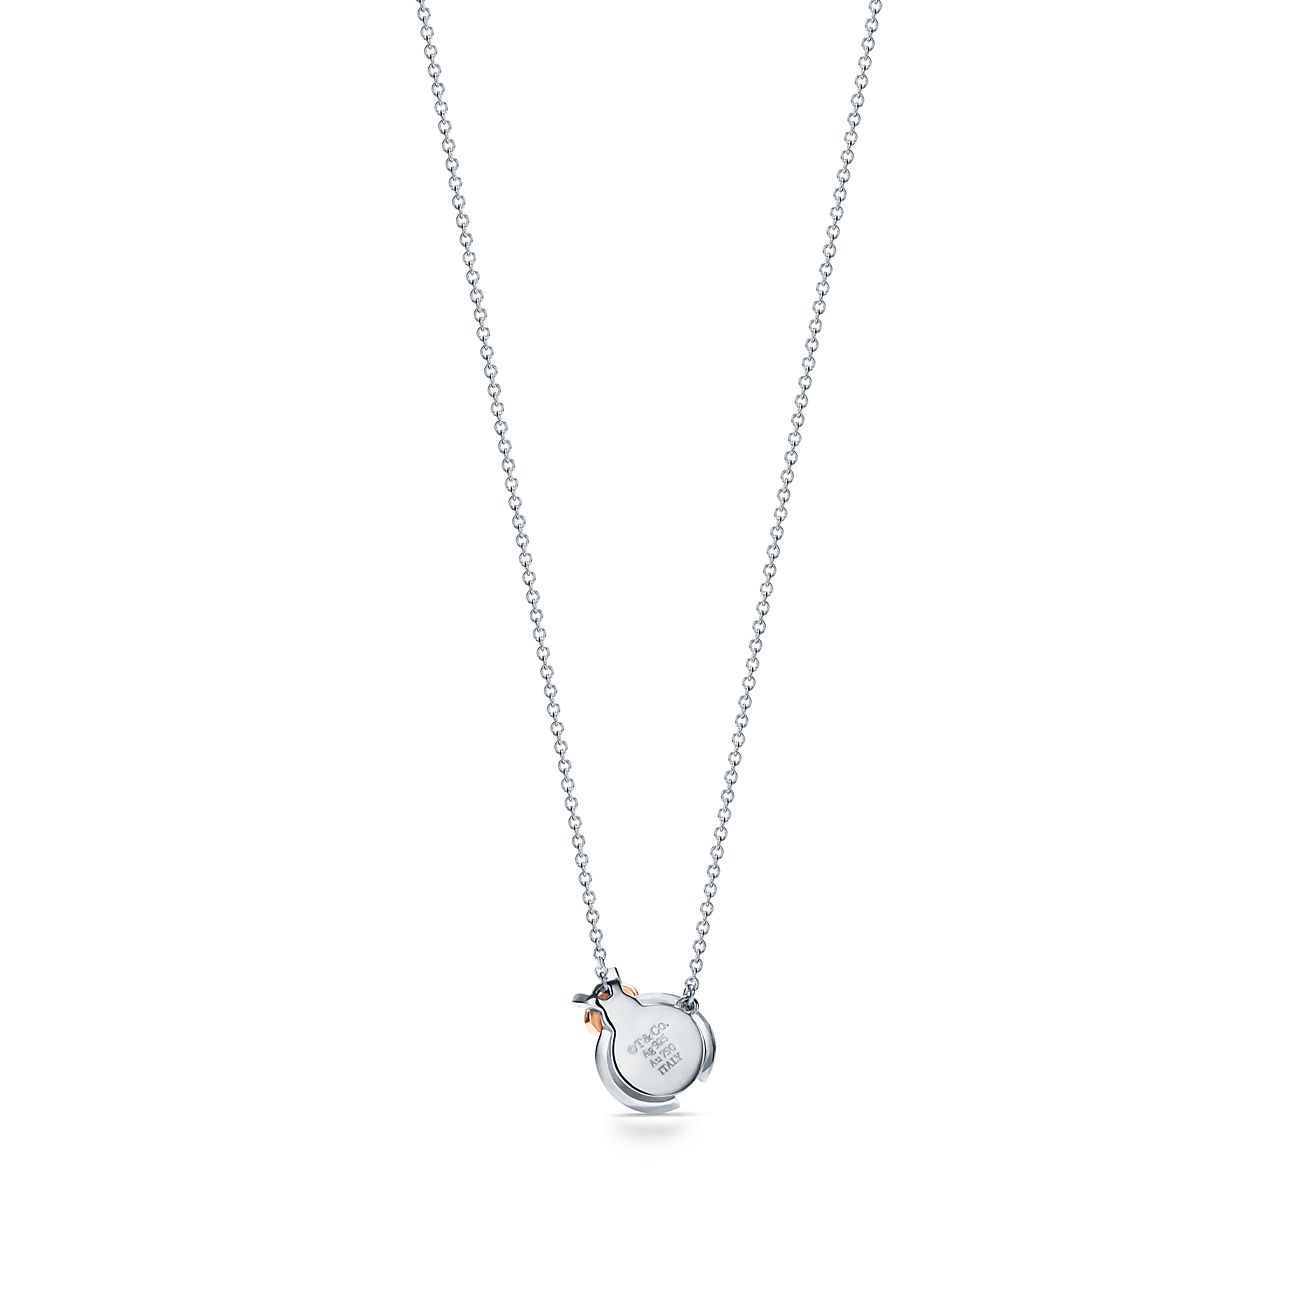 Tiffany & Co Lovebugs Ladybug Necklace & Bracelet Set Sterling Silver & 18K  Gold | eBay